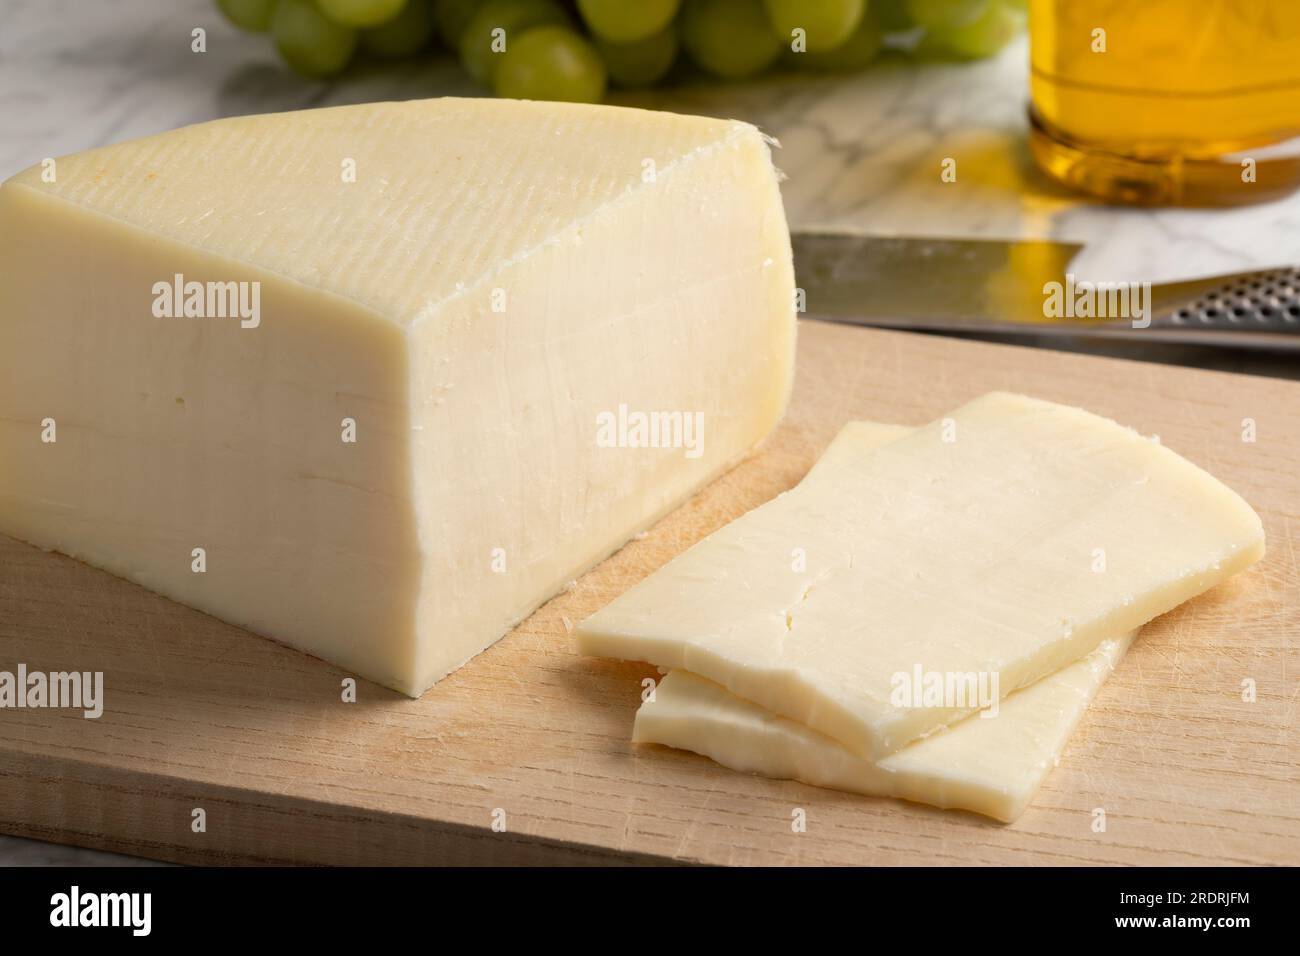 Pieza de queso Bel Paese italiano semi suave artesanal y rebanadas en una tabla de cortar Foto de stock